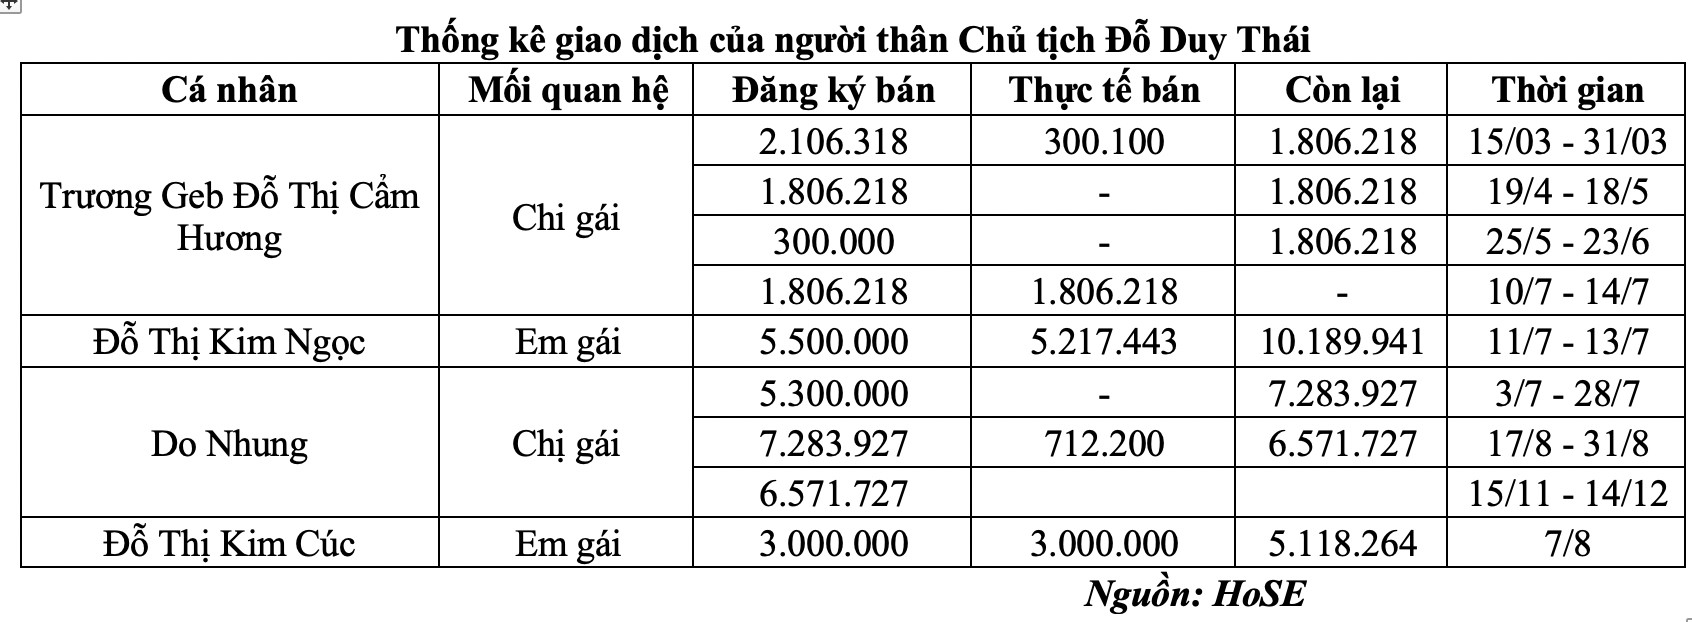 Thống kê giao dịch của người thân Chủ tịch Đỗ Duy Thái (Nguồn: HoSE)